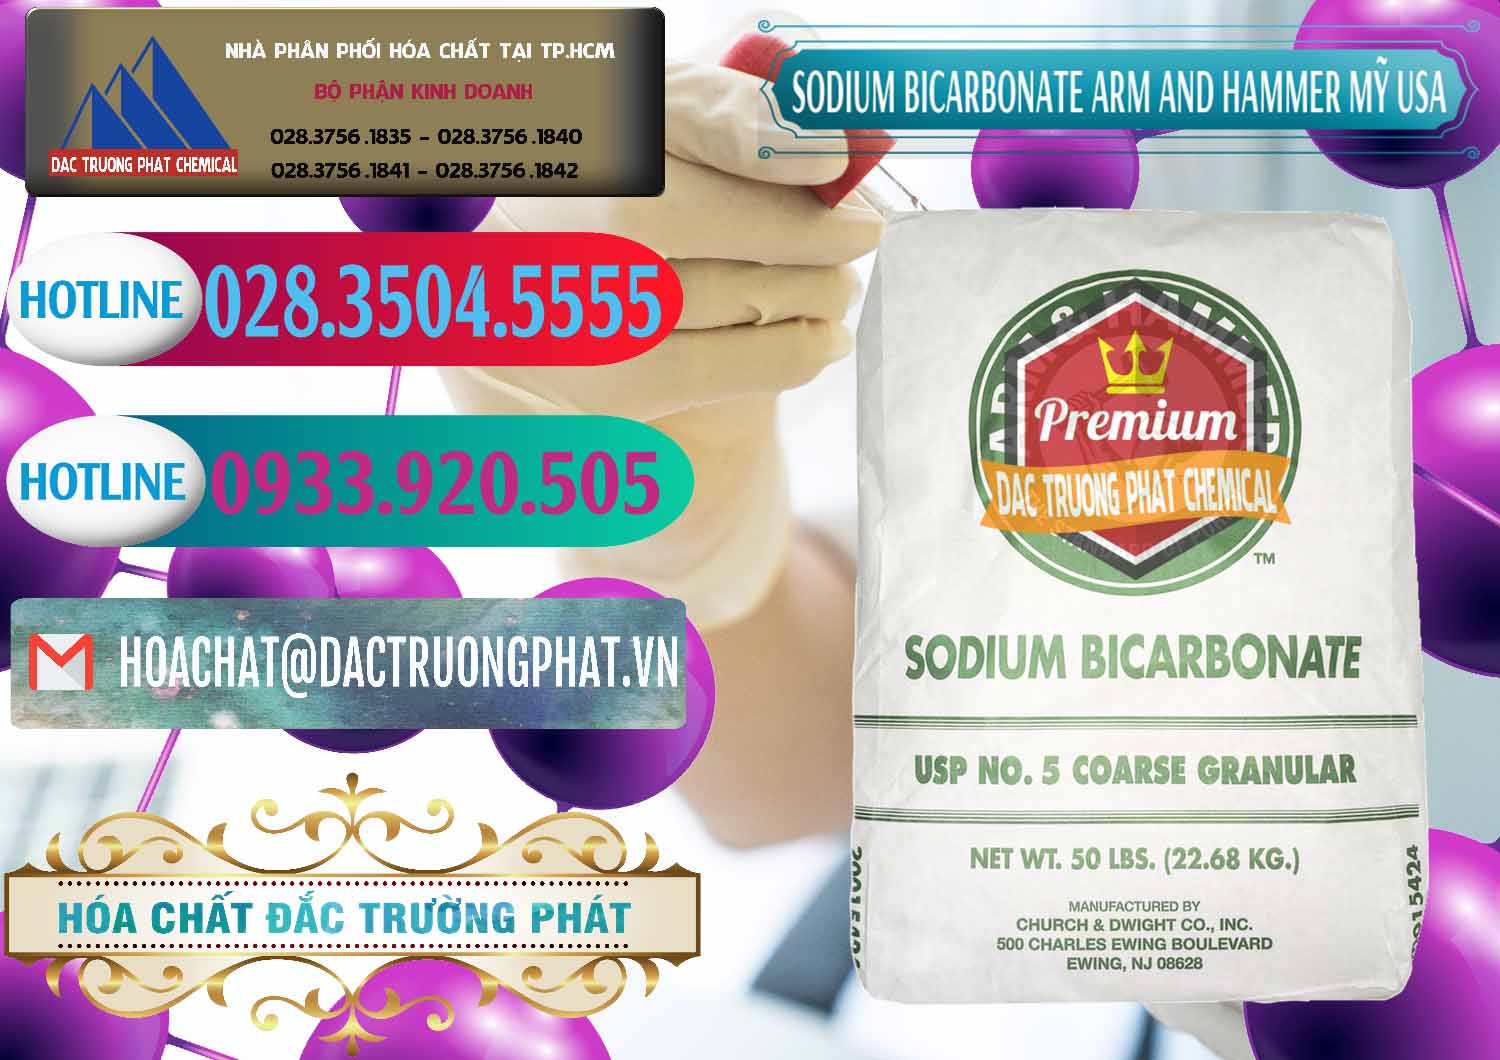 Công ty bán & phân phối Sodium Bicarbonate – Bicar NaHCO3 Food Grade Arm And Hammer Mỹ USA - 0255 - Cty phân phối - nhập khẩu hóa chất tại TP.HCM - truongphat.vn